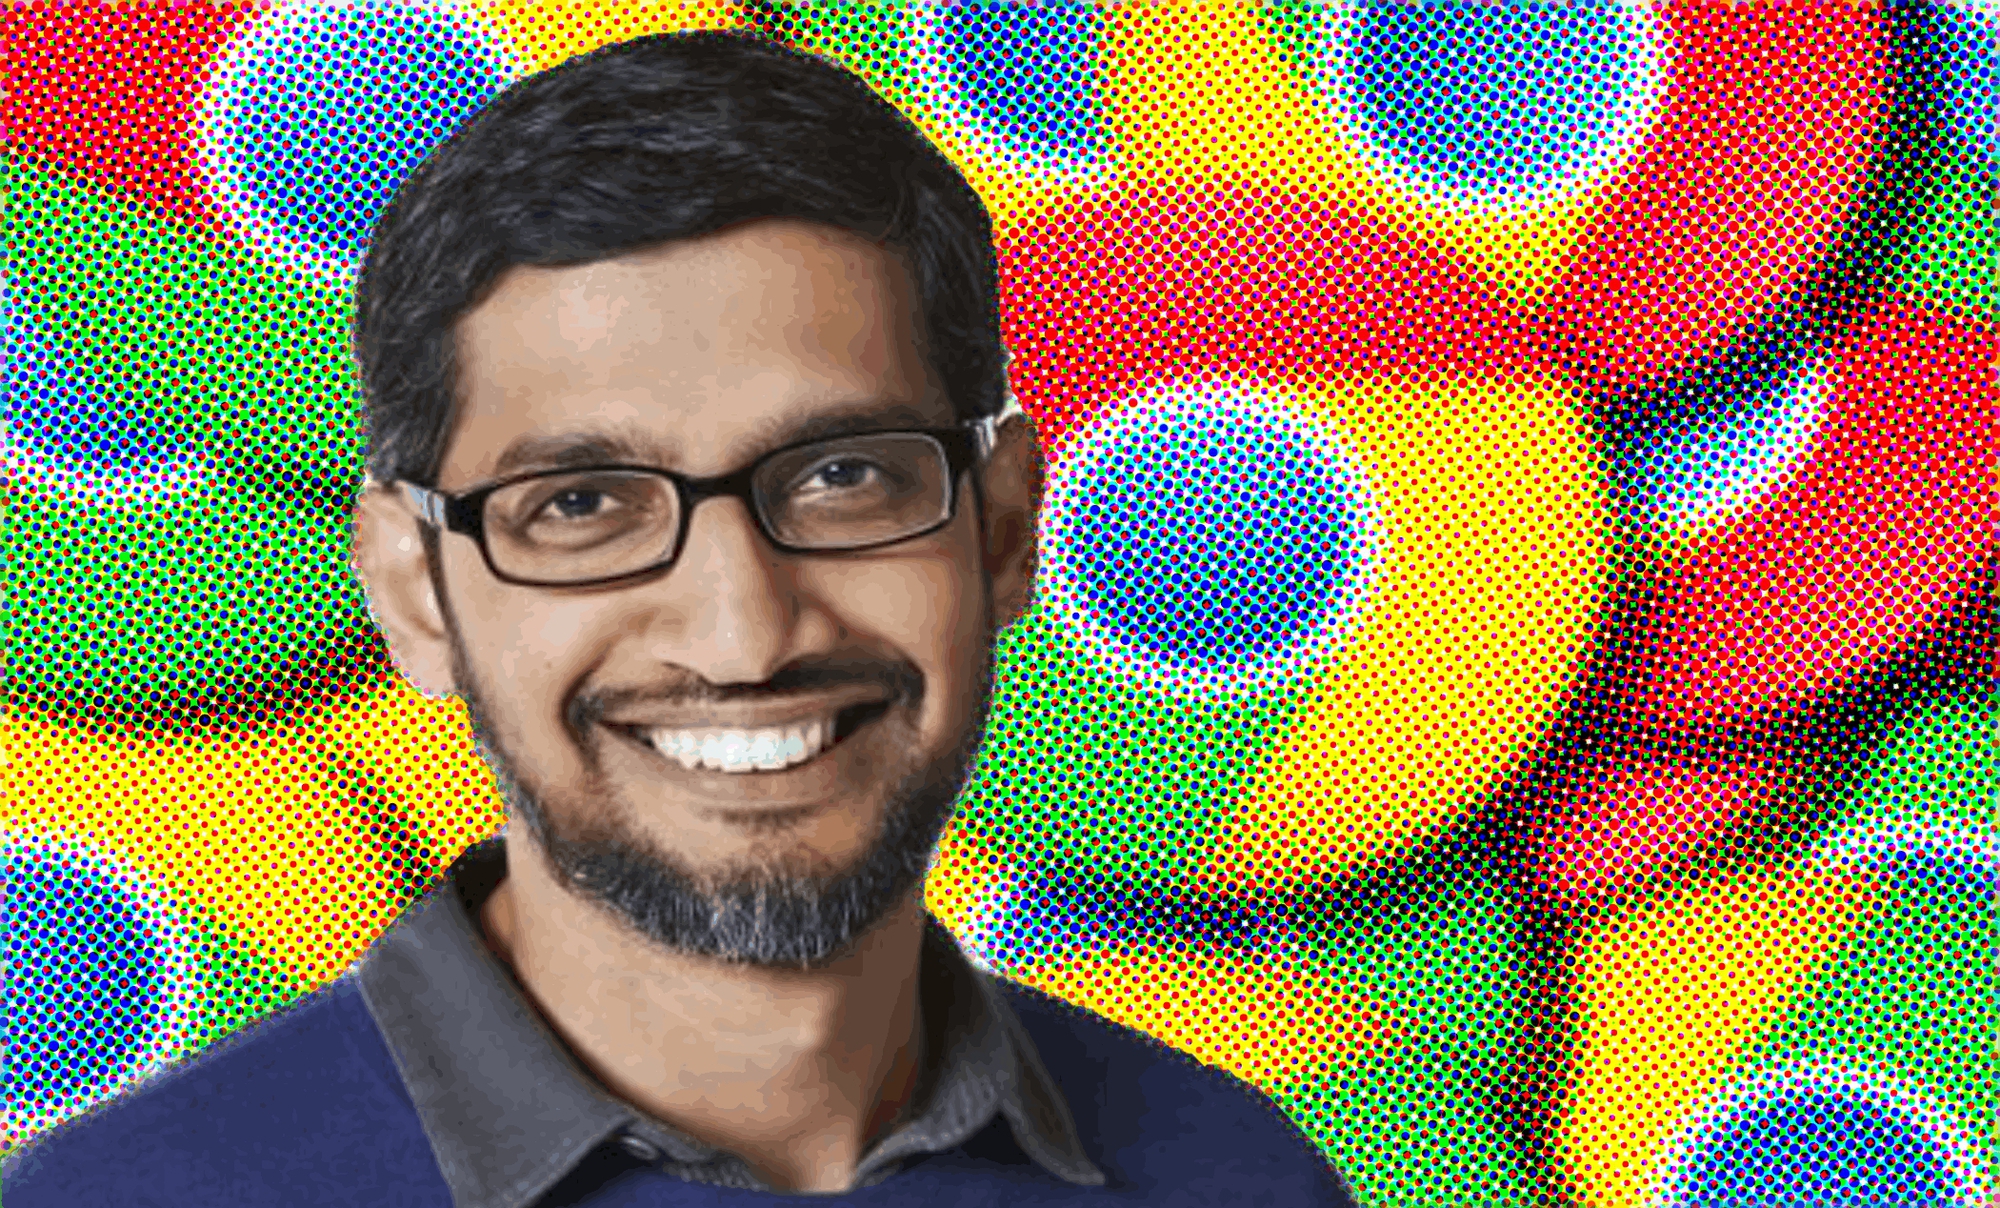 Giám đốc điều hành Google Pichai thừa nhận rằng, không chỉ nền kinh tế gây ra thách thức tại Google, mà còn là bộ máy quan liêu ngày càng mở rộng tại công ty. Ảnh: @AFP.